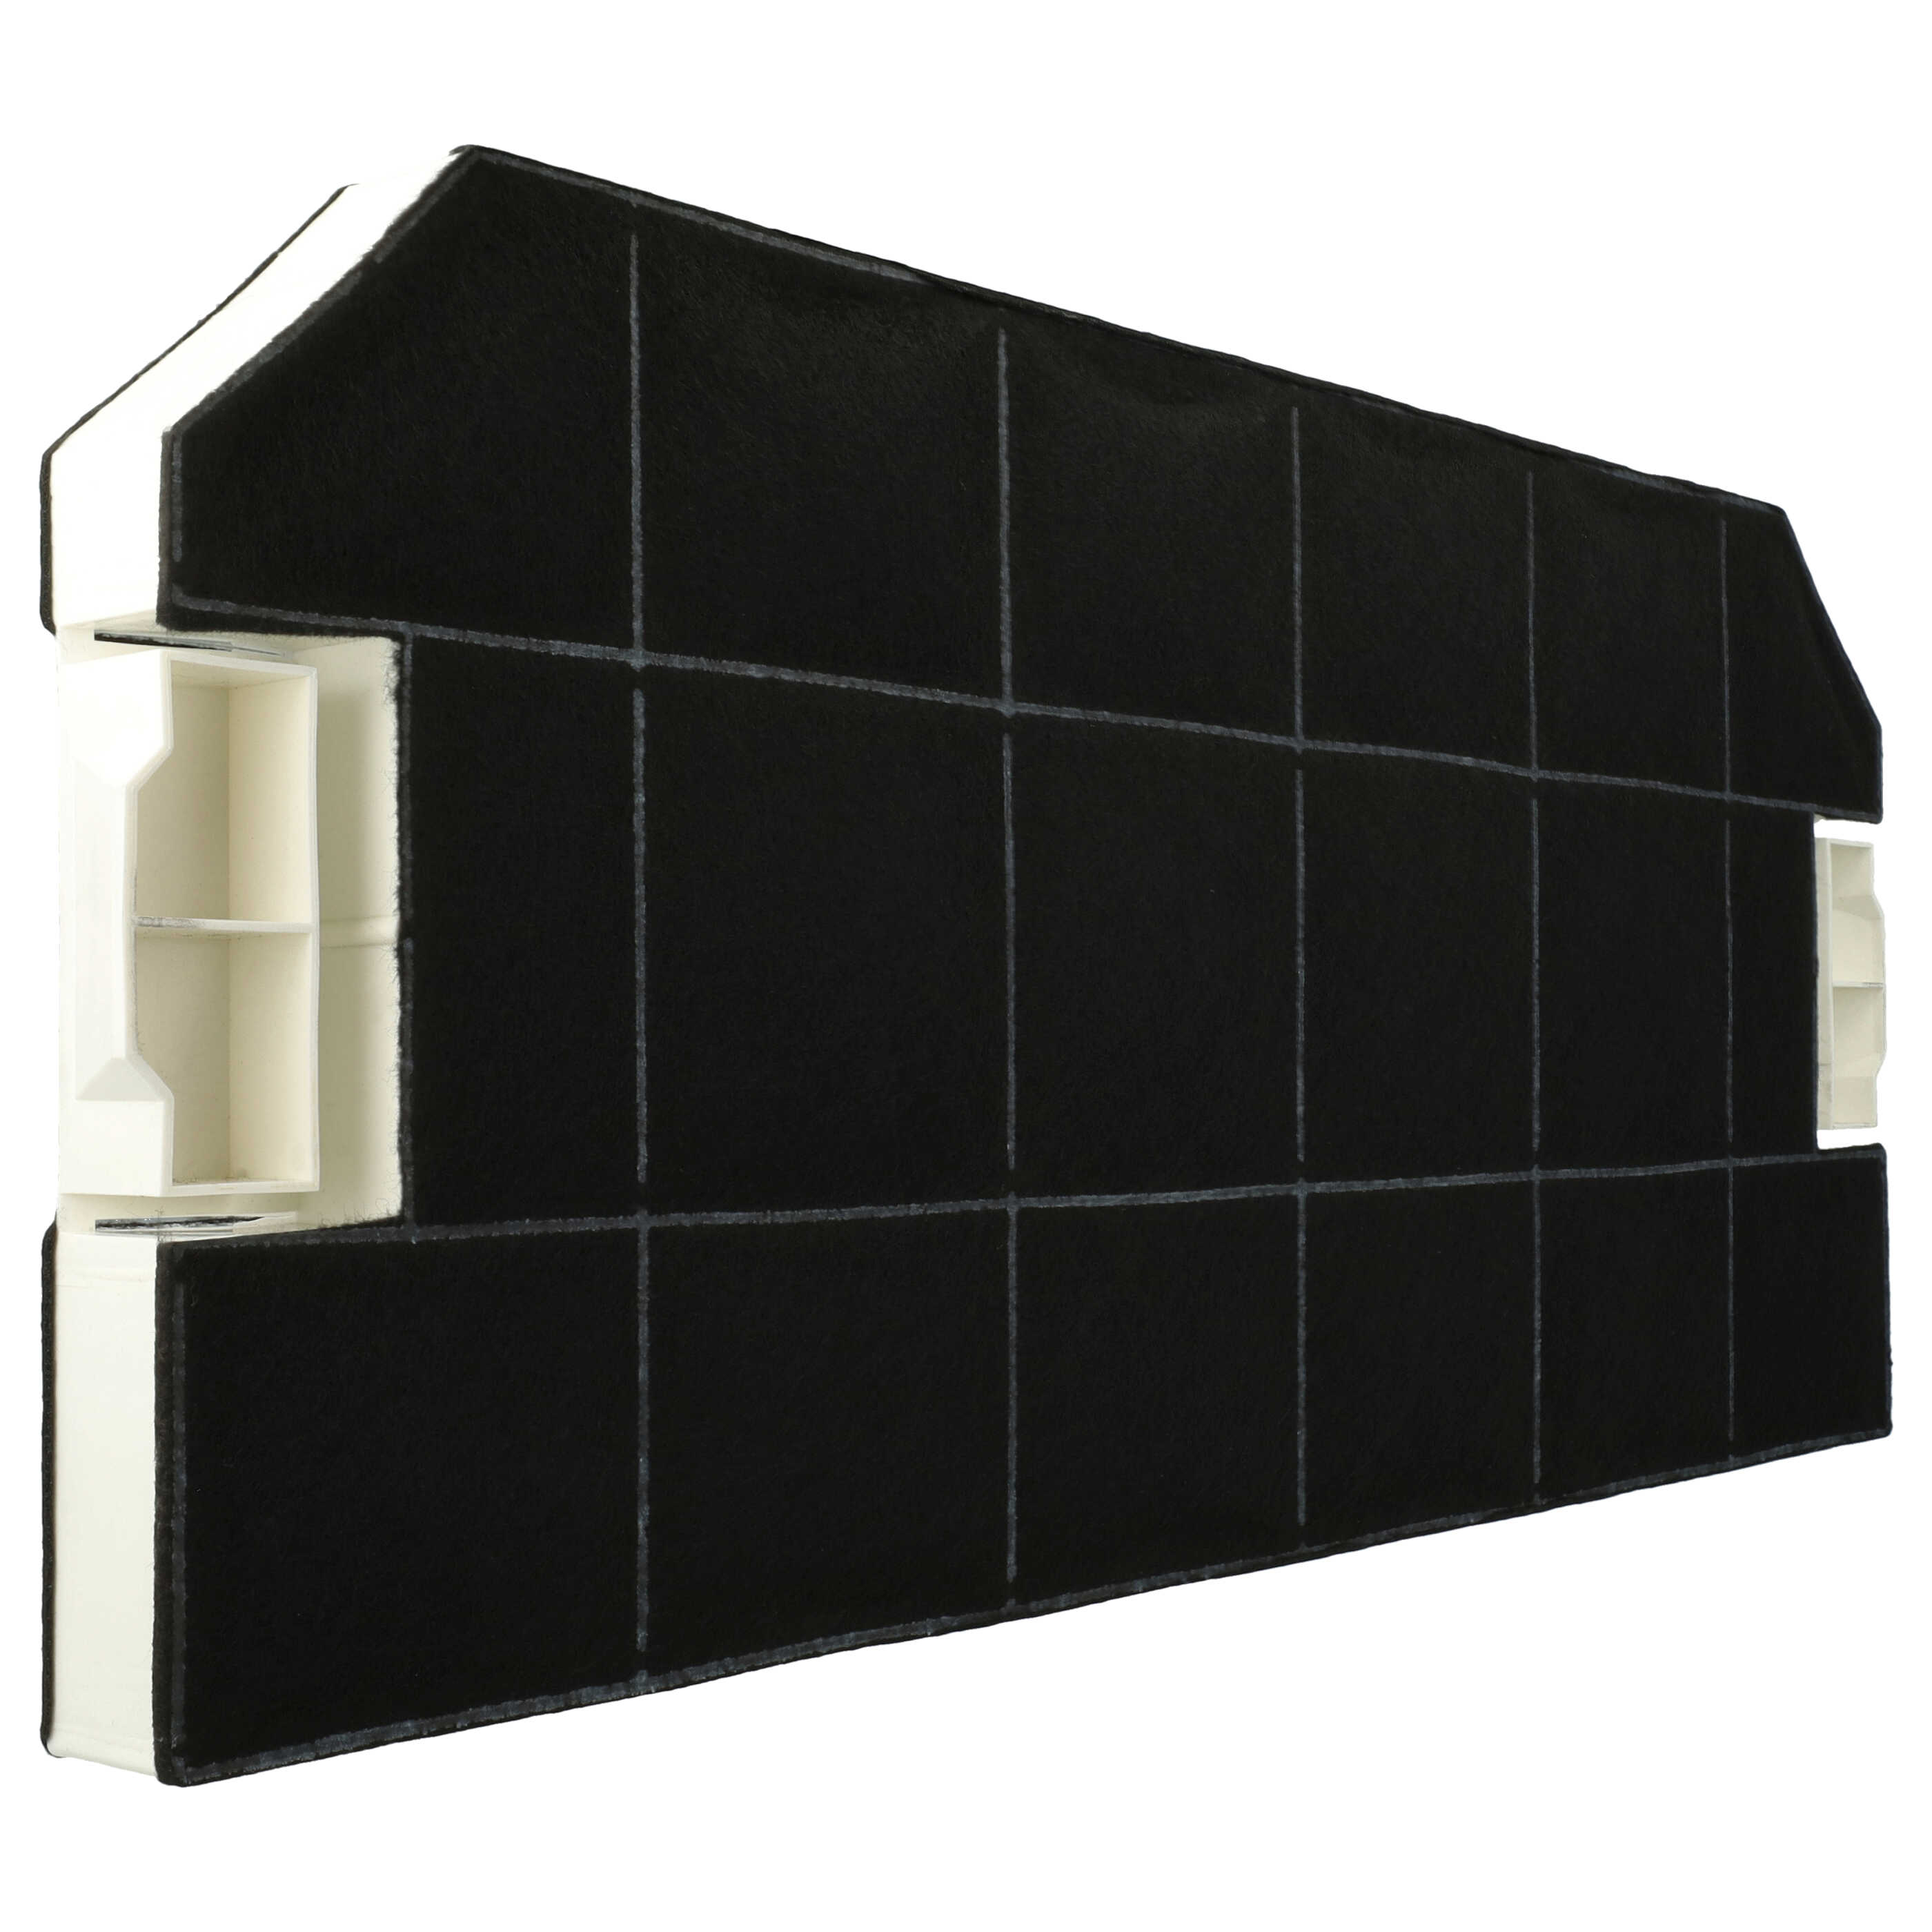 Filtr węglowy do okapu Bosch zamiennik Bosch DHZ3300 - 49,6 x 23 x 3 cm